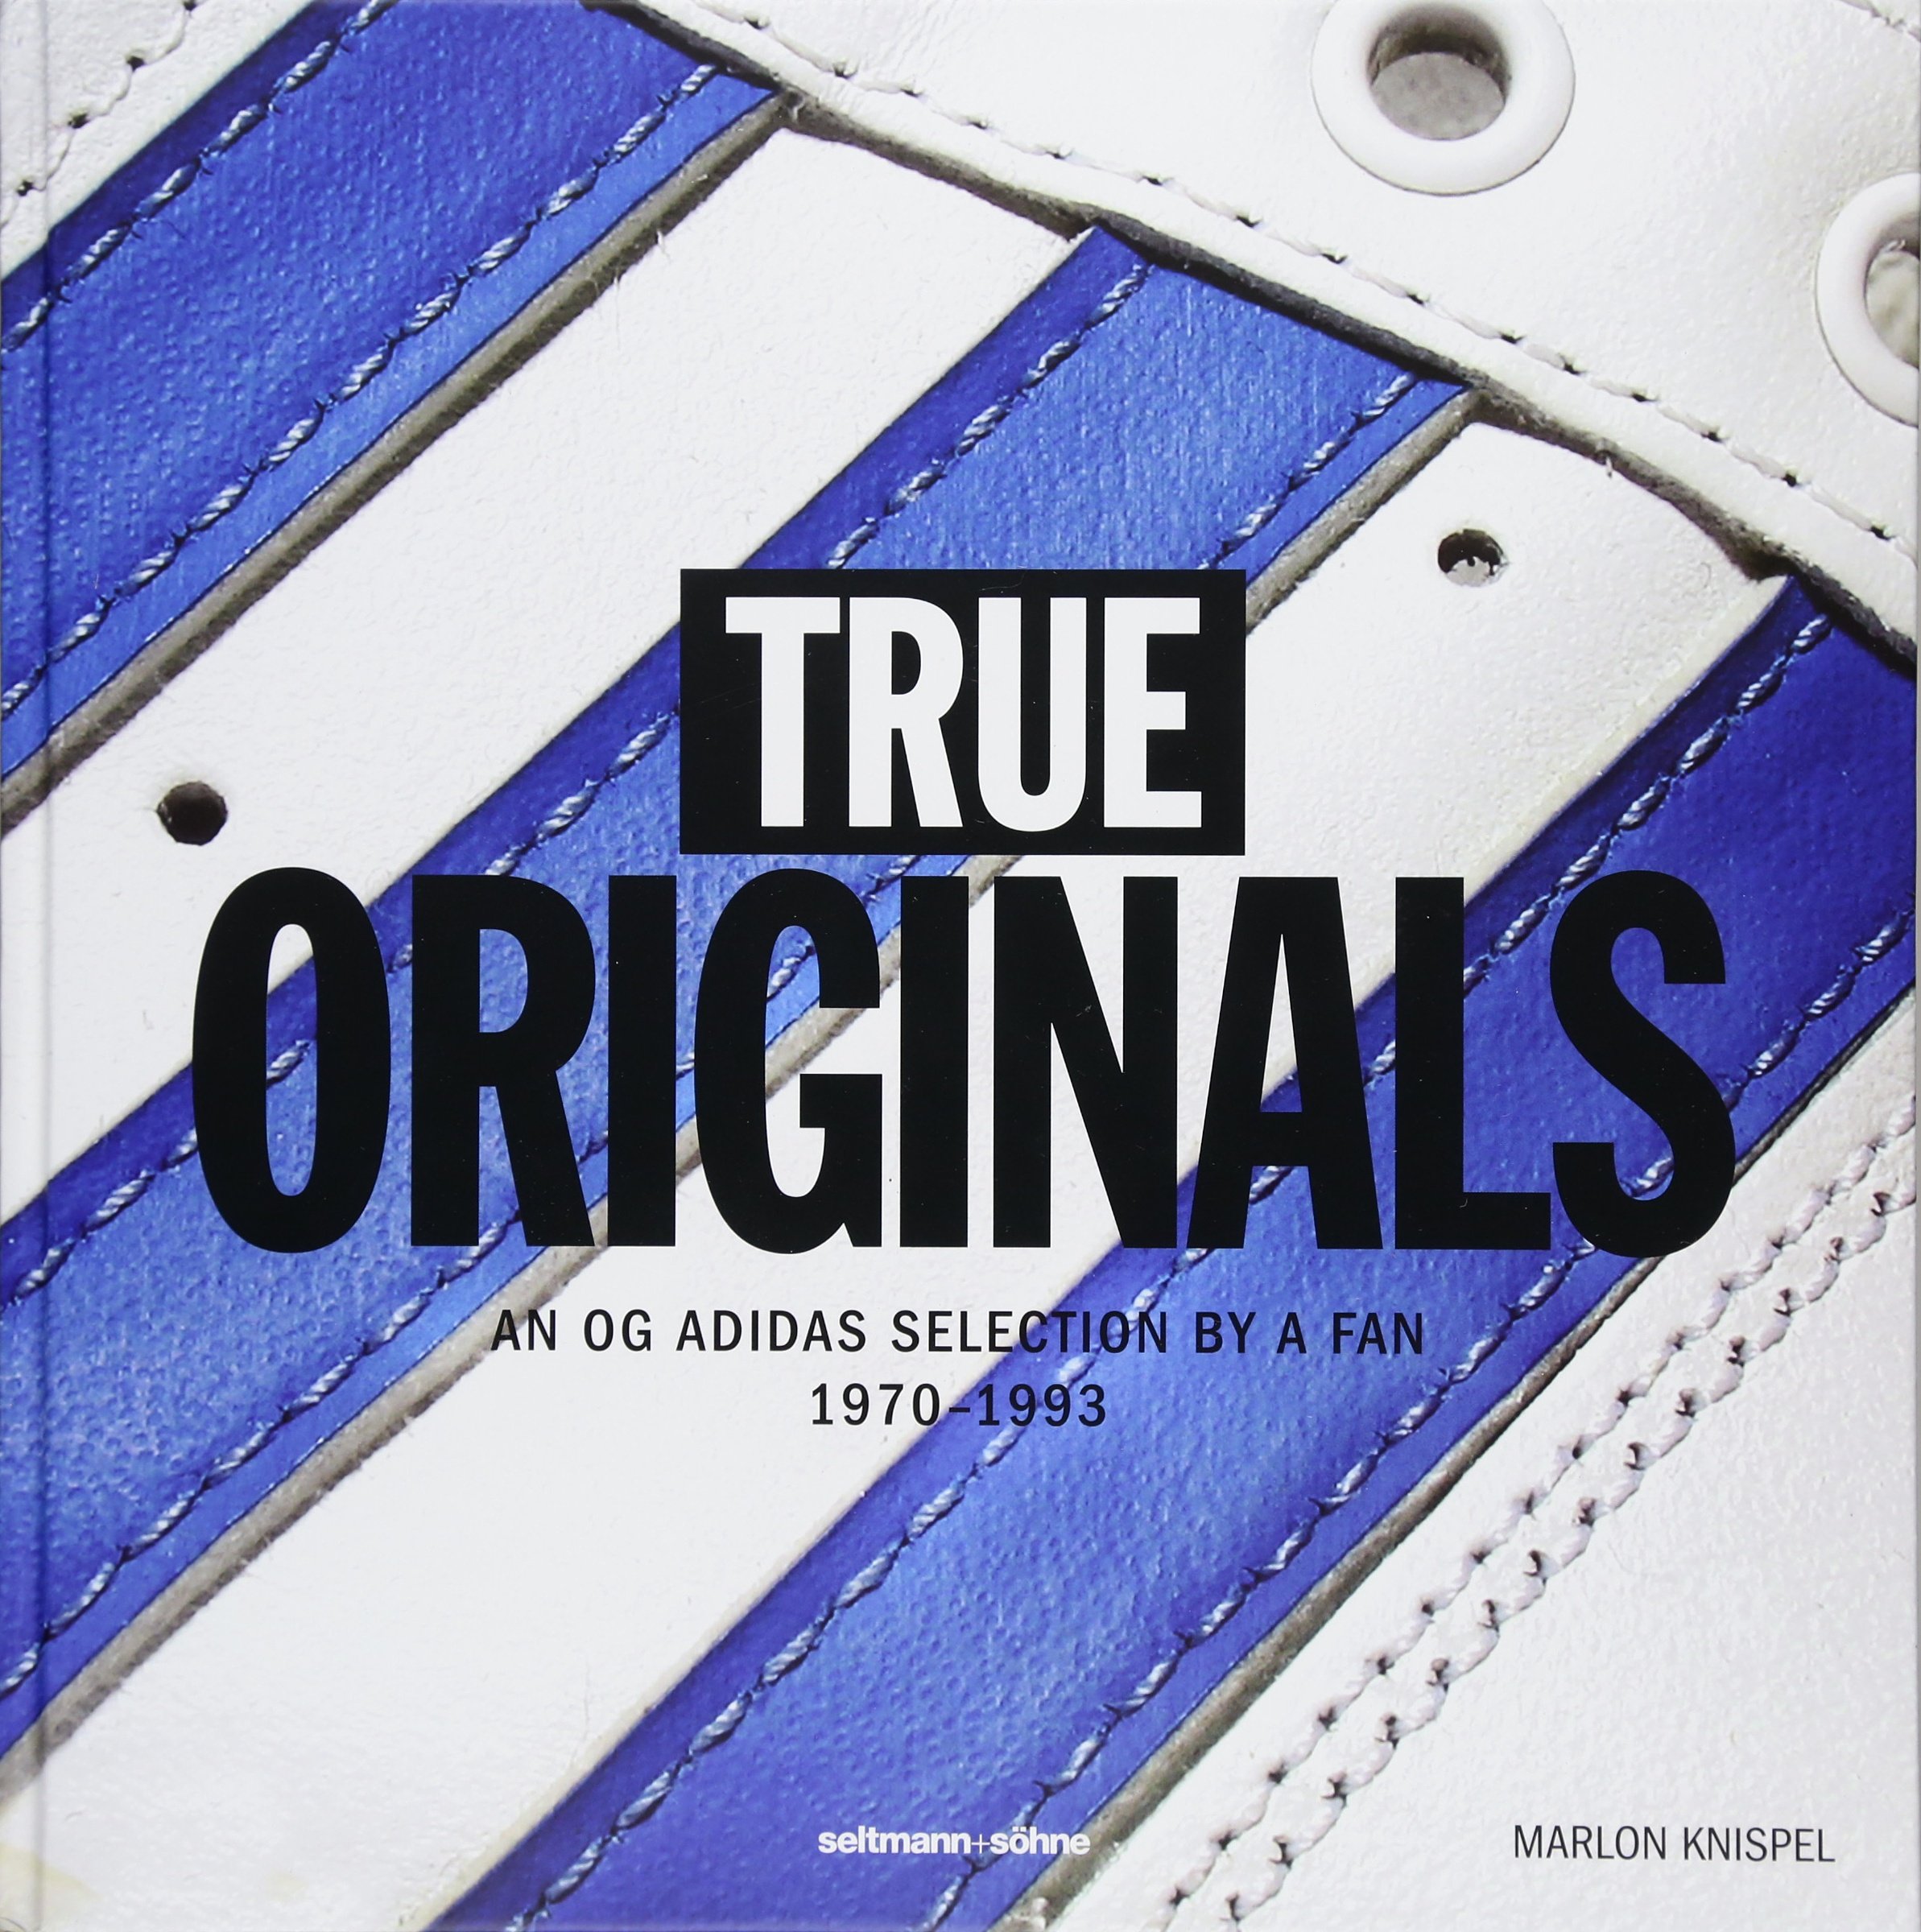 True-Originals-An-OG-Adidas-Selection-by-a-Fan-1970-1993